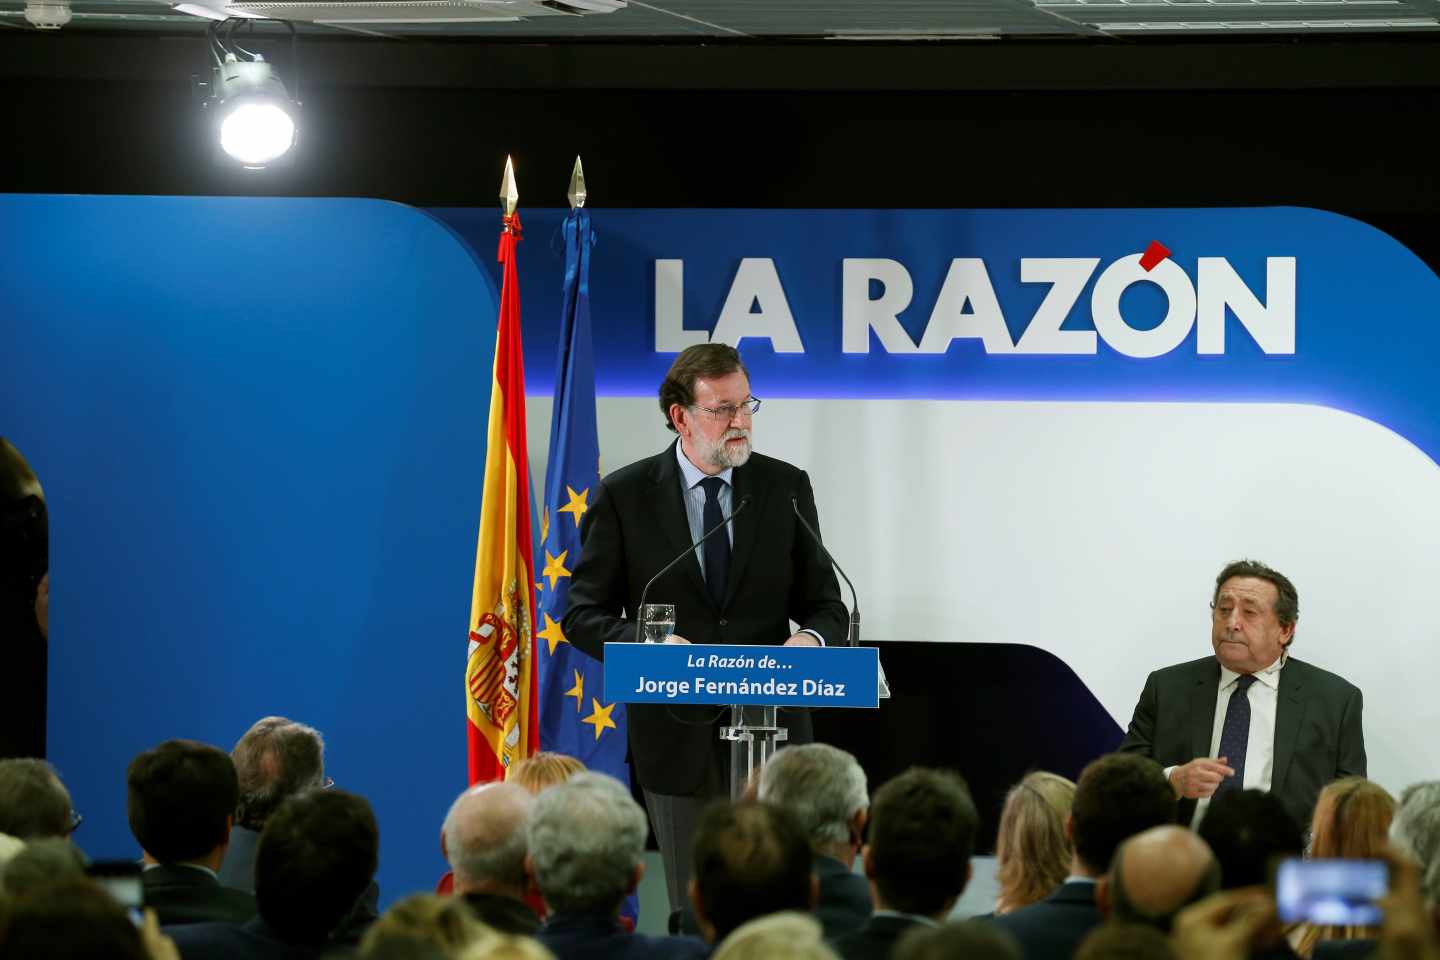 El presidente del Gobierno, Mariano Rajoy, en un encuentro en La Razón.